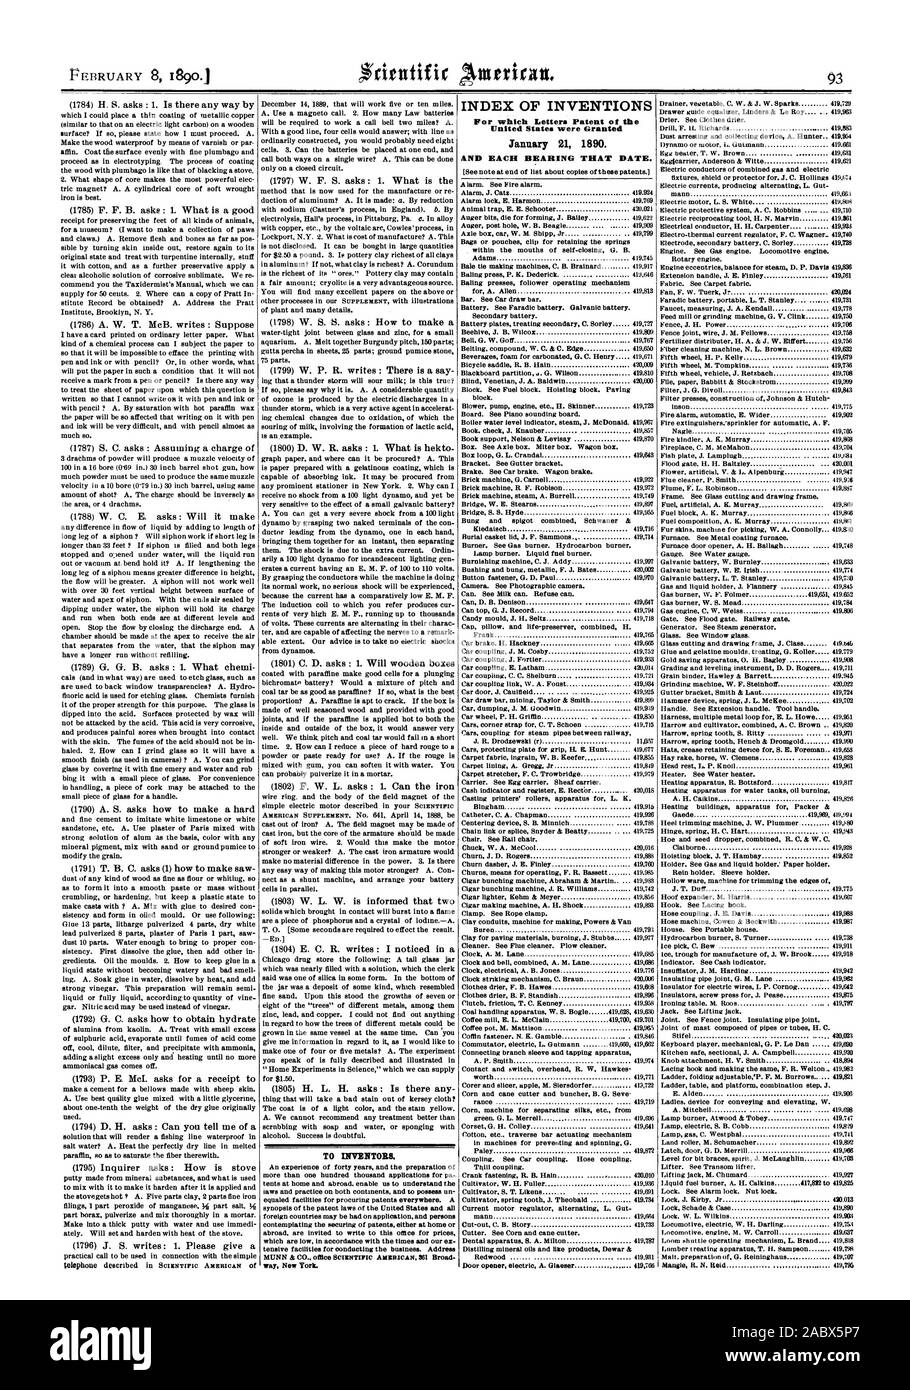 Per gli inventori. Indice delle invenzioni per le quali lettere di Brevetto degli Stati Uniti sono stati concessi il 21 gennaio 1890., Scientific American, 1890-02-08 Foto Stock